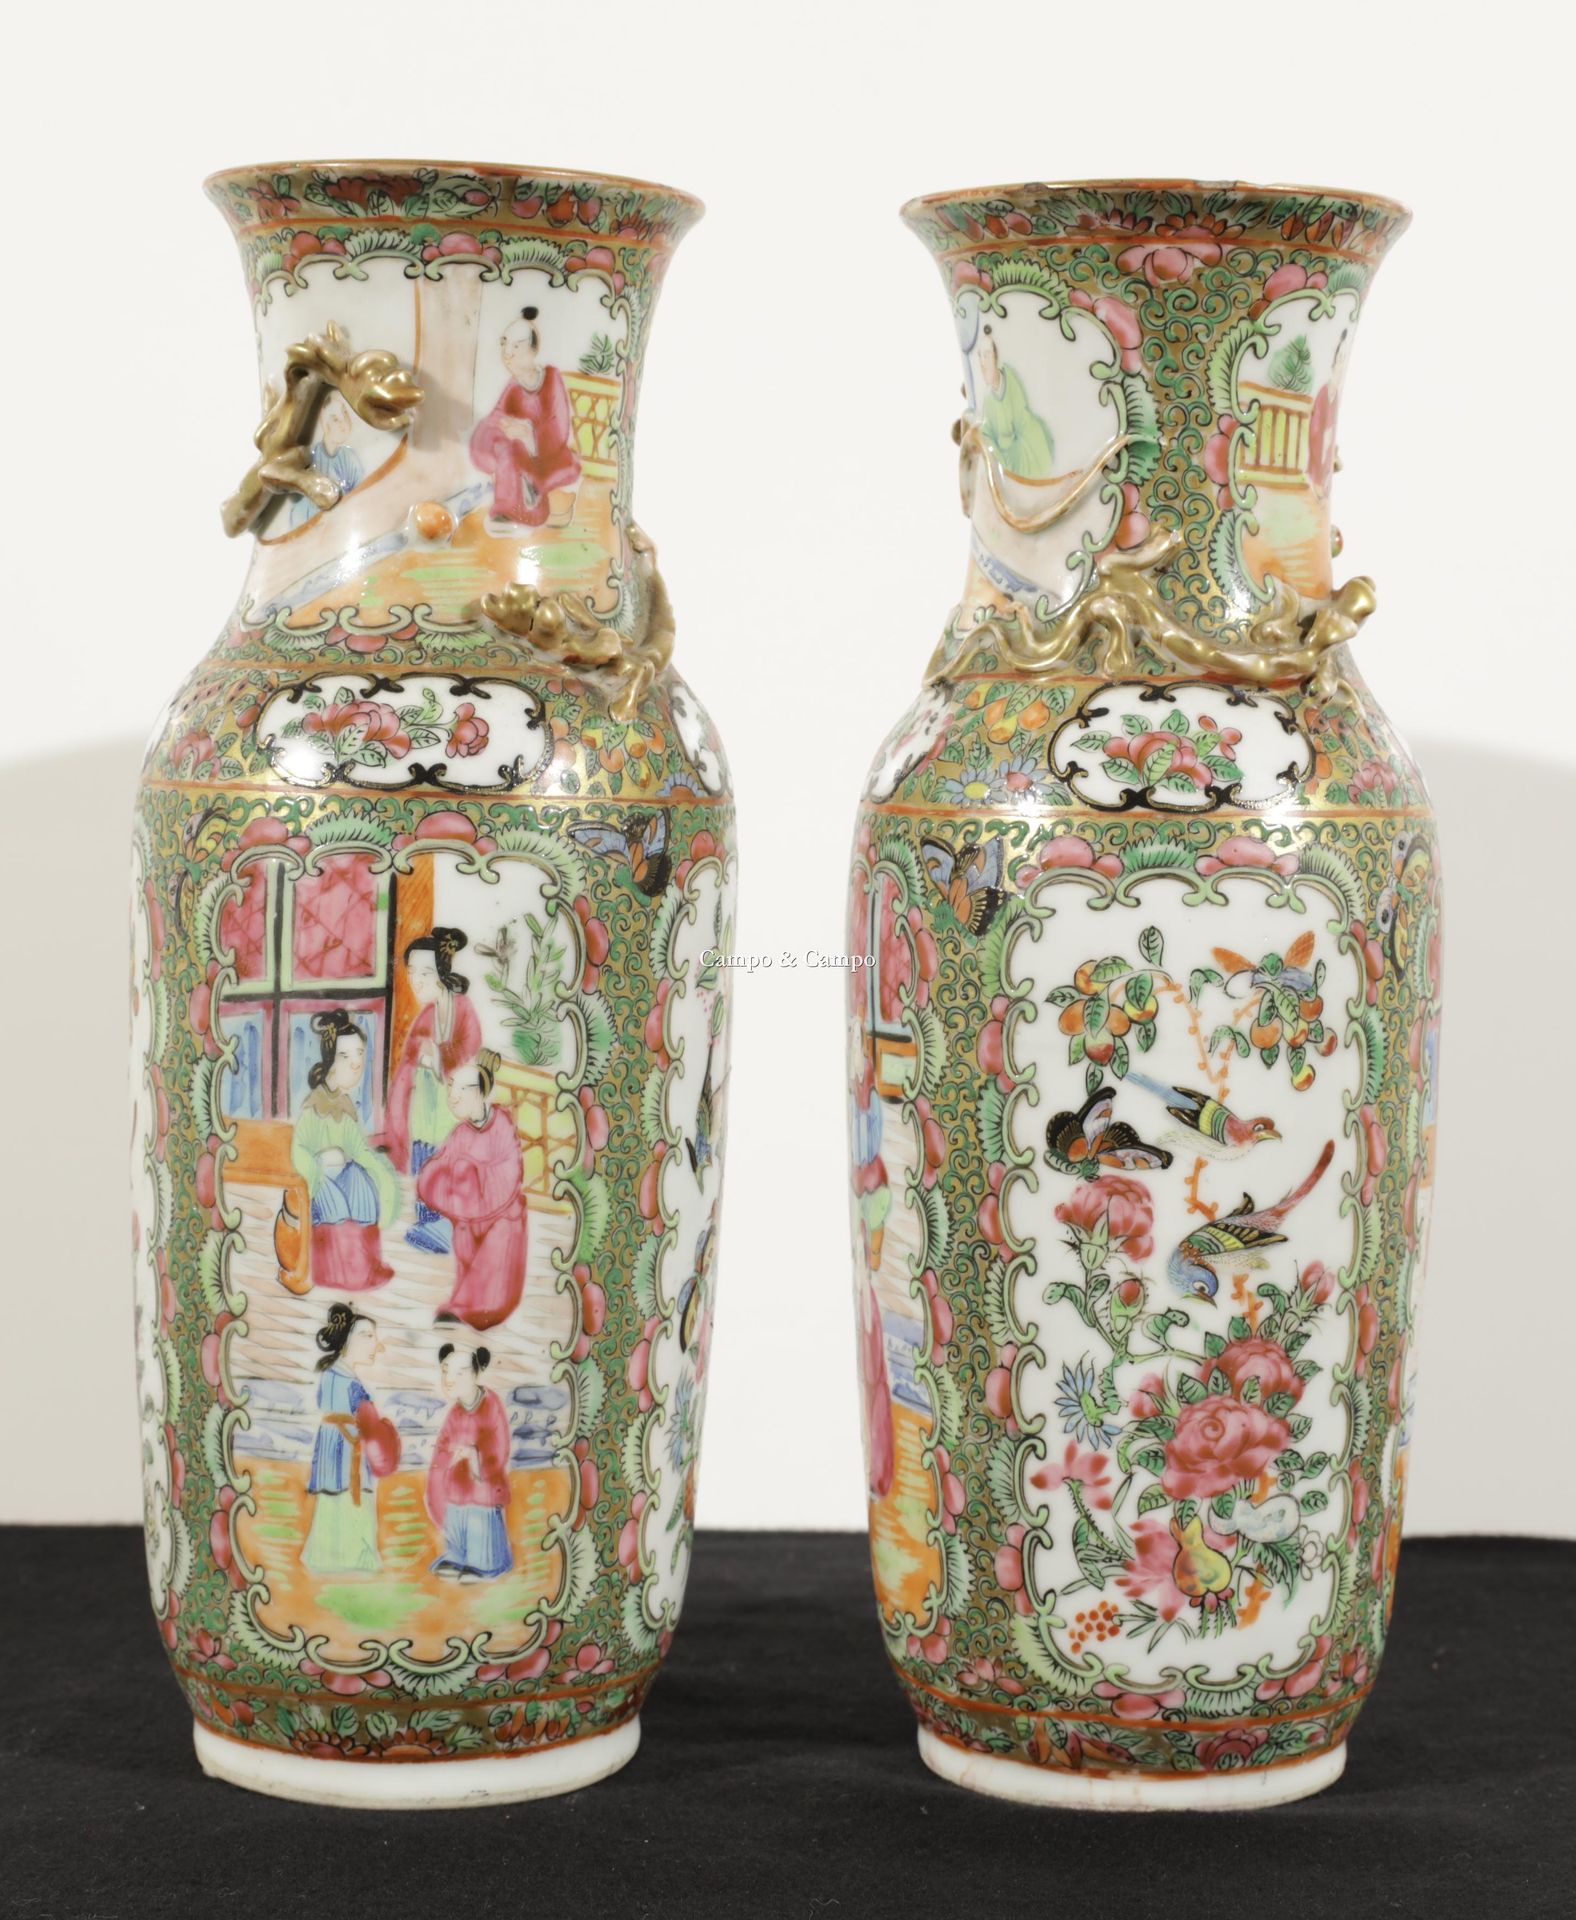 VARIA 一对广东瓷器花瓶，颈部有龙的装饰
Paar vazen van Kanton porselein met een decoratie van dra&hellip;